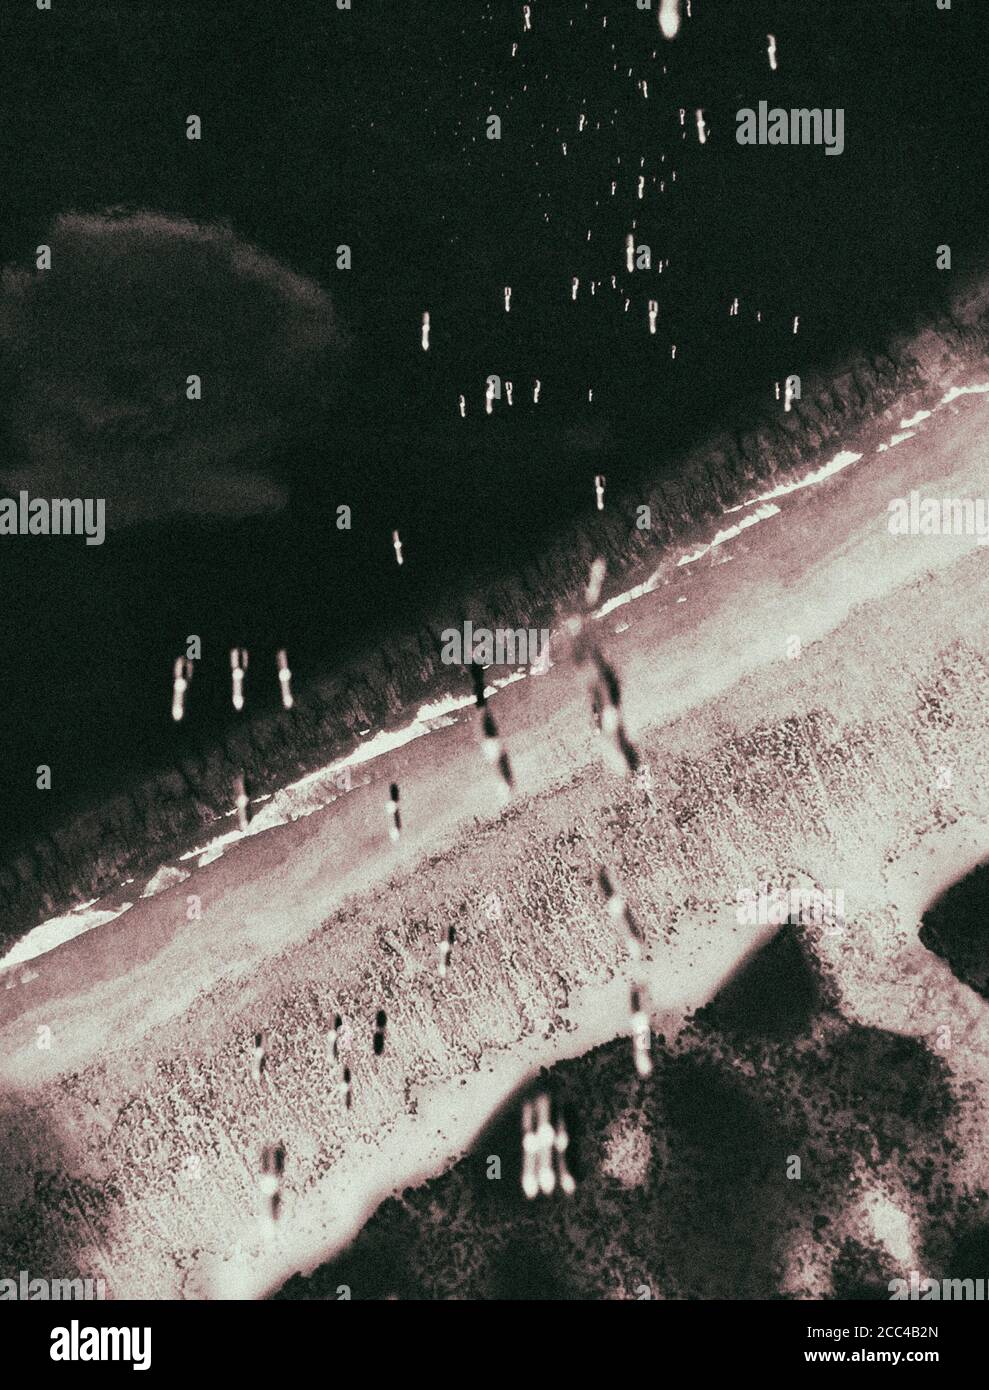 Los bombarderos de la Fuerza Aérea DE LOS ESTADOS UNIDOS (USAF) irrumpieron, las bombas estadounidenses caen en el territorio del Japón imperial durante el bombardeo de alfombras. Japón, 1945 Foto de stock